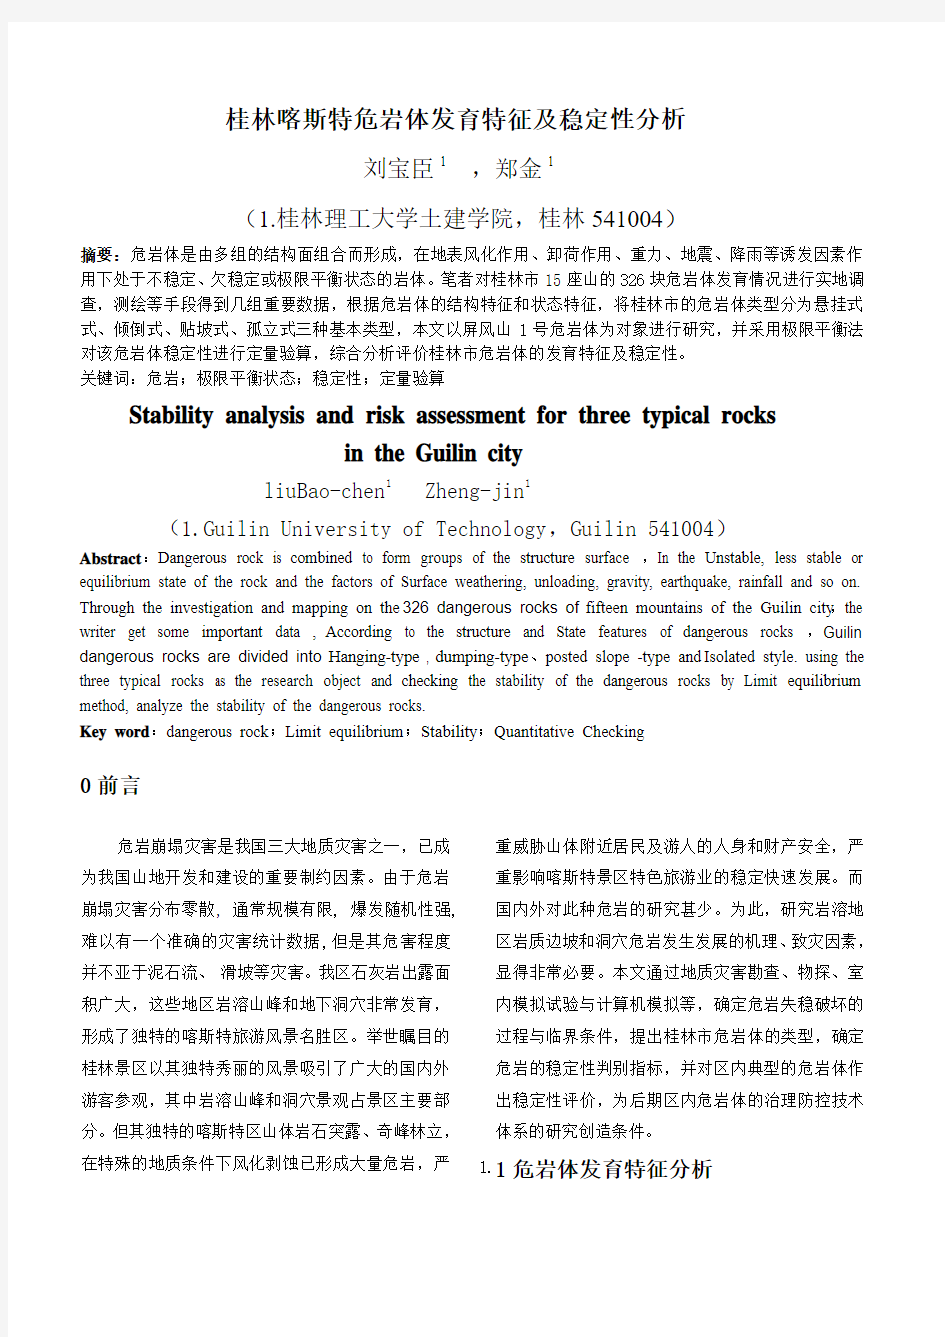 桂林市典型危岩体稳定性分析及危险性评价2